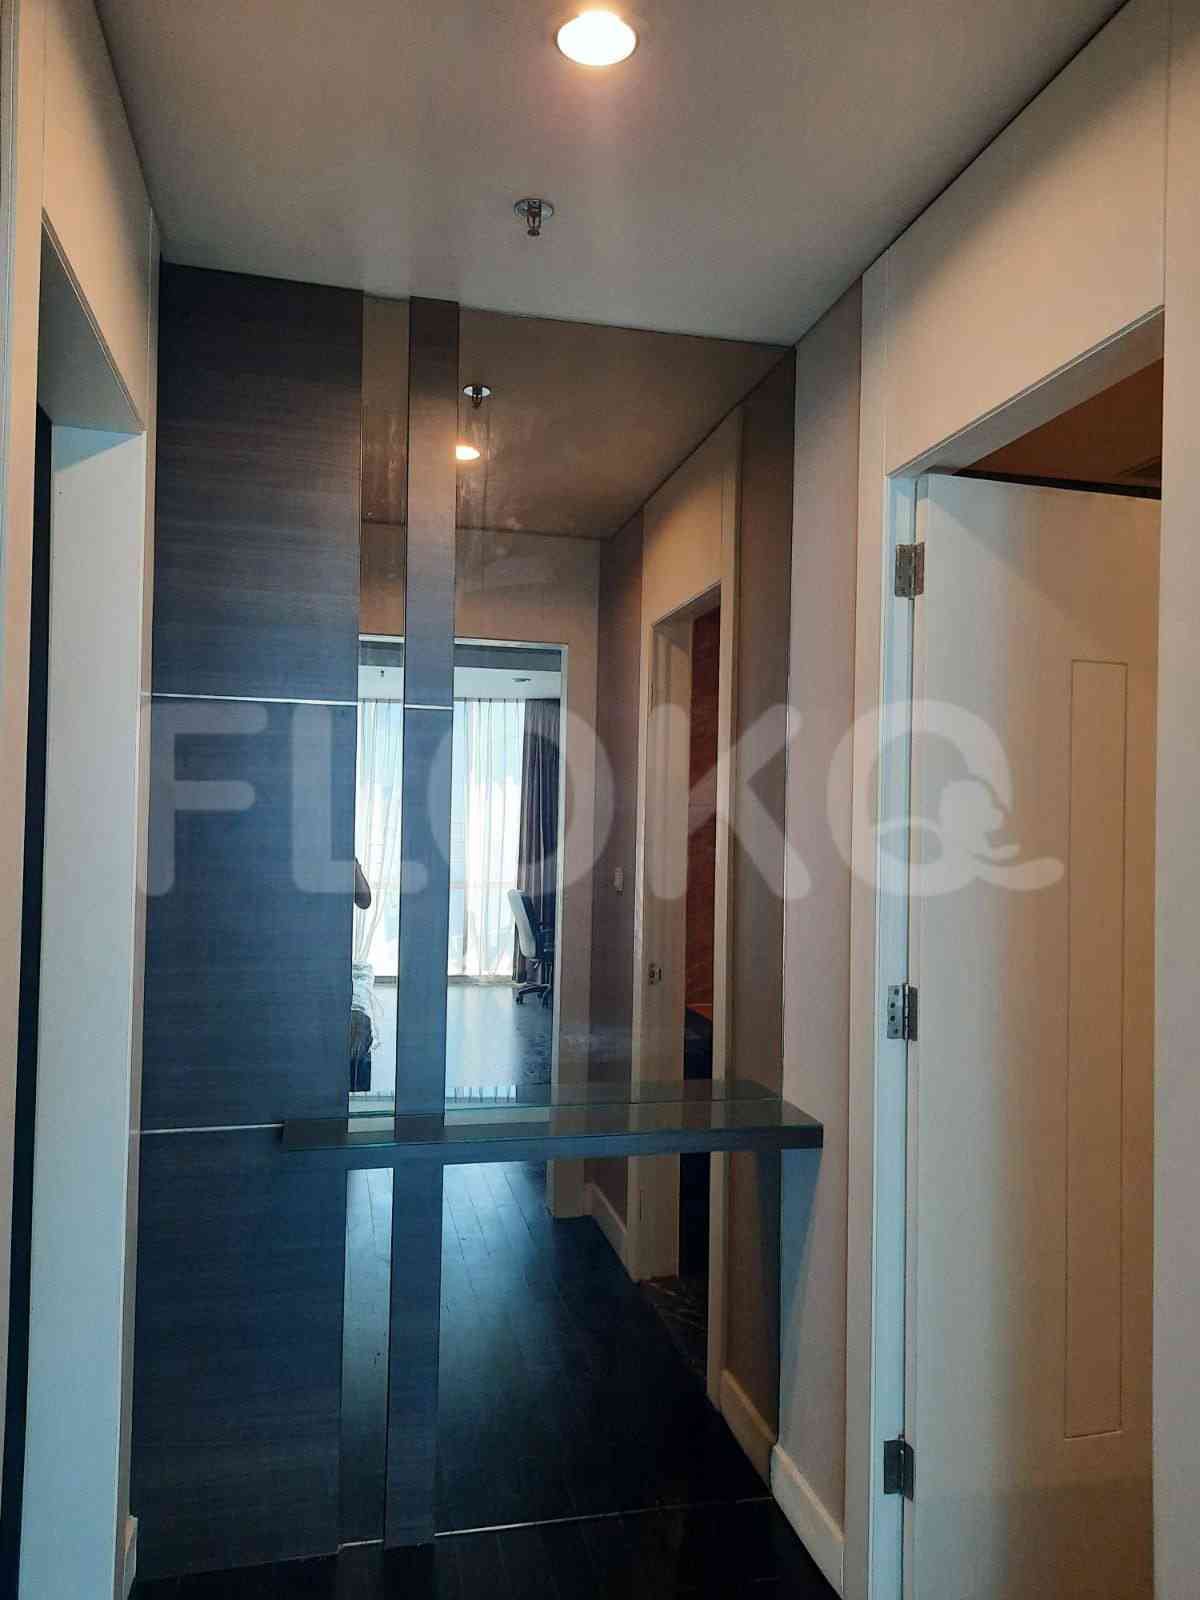 4 Bedroom on 15th Floor for Rent in Regatta - fpl609 2